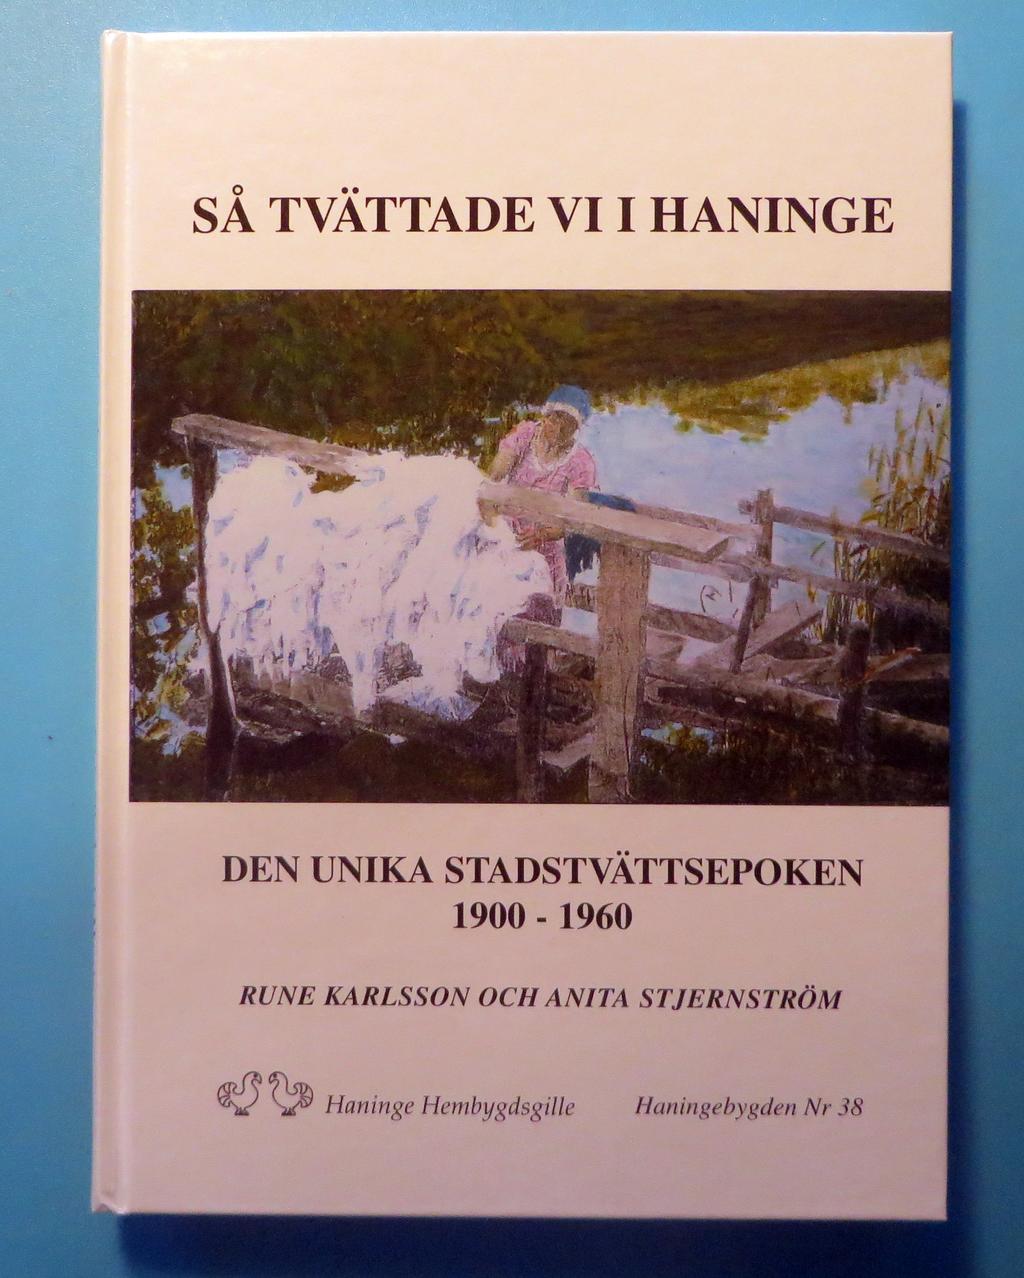 Den finns nu att köpa på Akademibokhandeln i Haninge Centrum och Klackenbergs Bokhandel på Port 73. Priset är 150:-. Finns också hos Hemslöjdsföreningen på Klockargården i Västerhaninge. Öppet: onsd.